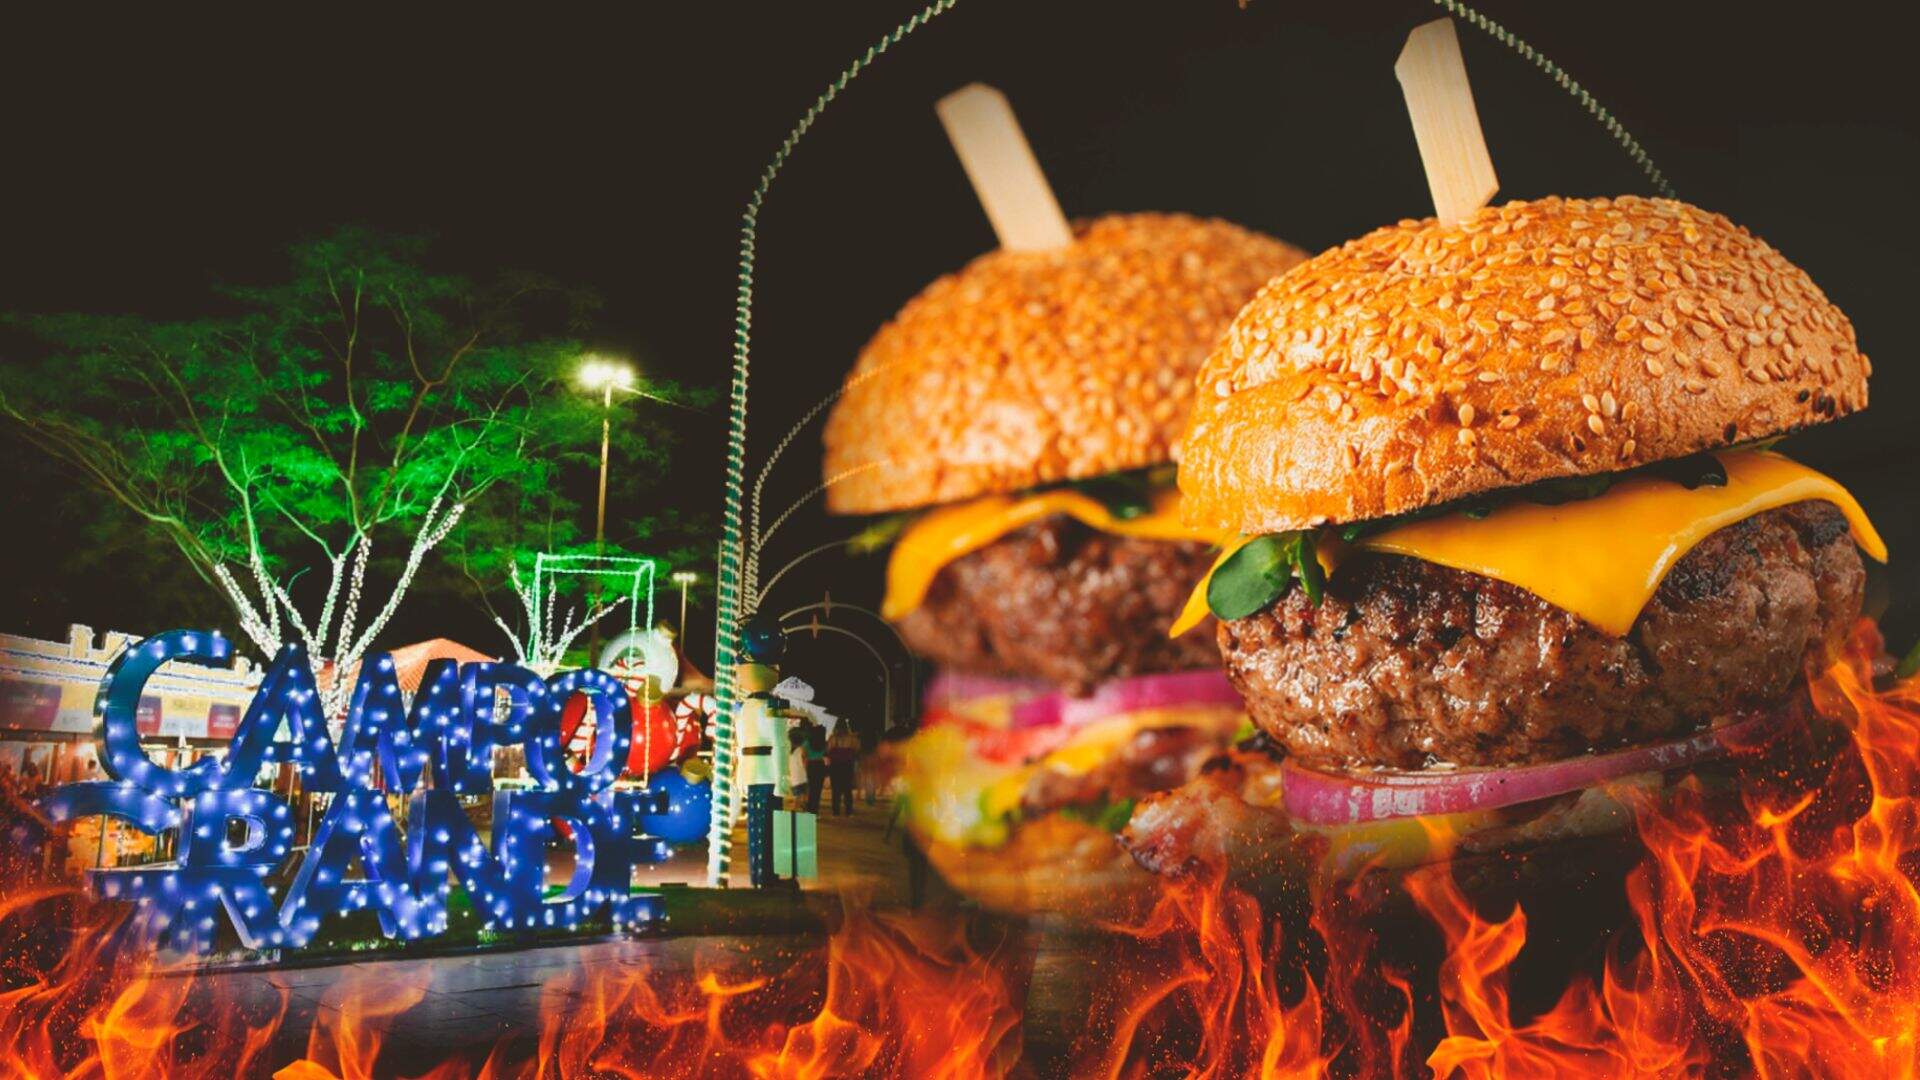 Festival do Hambúrguer promete agitar a Cidade do Natal com sabor e diversidade culinária